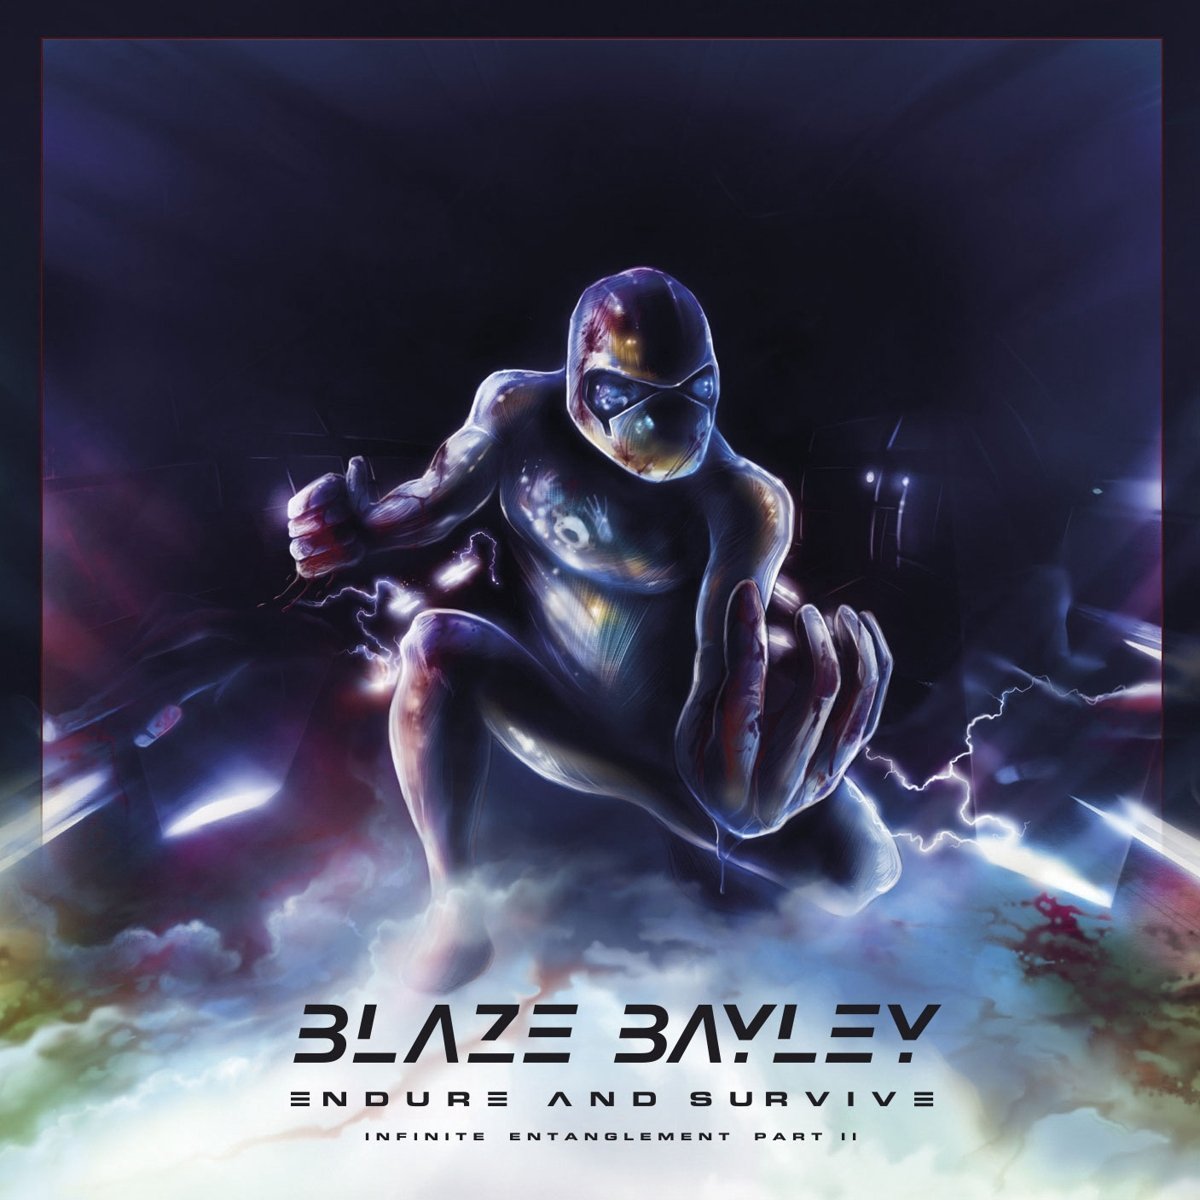 Hanglemez Blaze Bayley - Endure And Survive (Infinite Entanglement Part II) (2 LP)